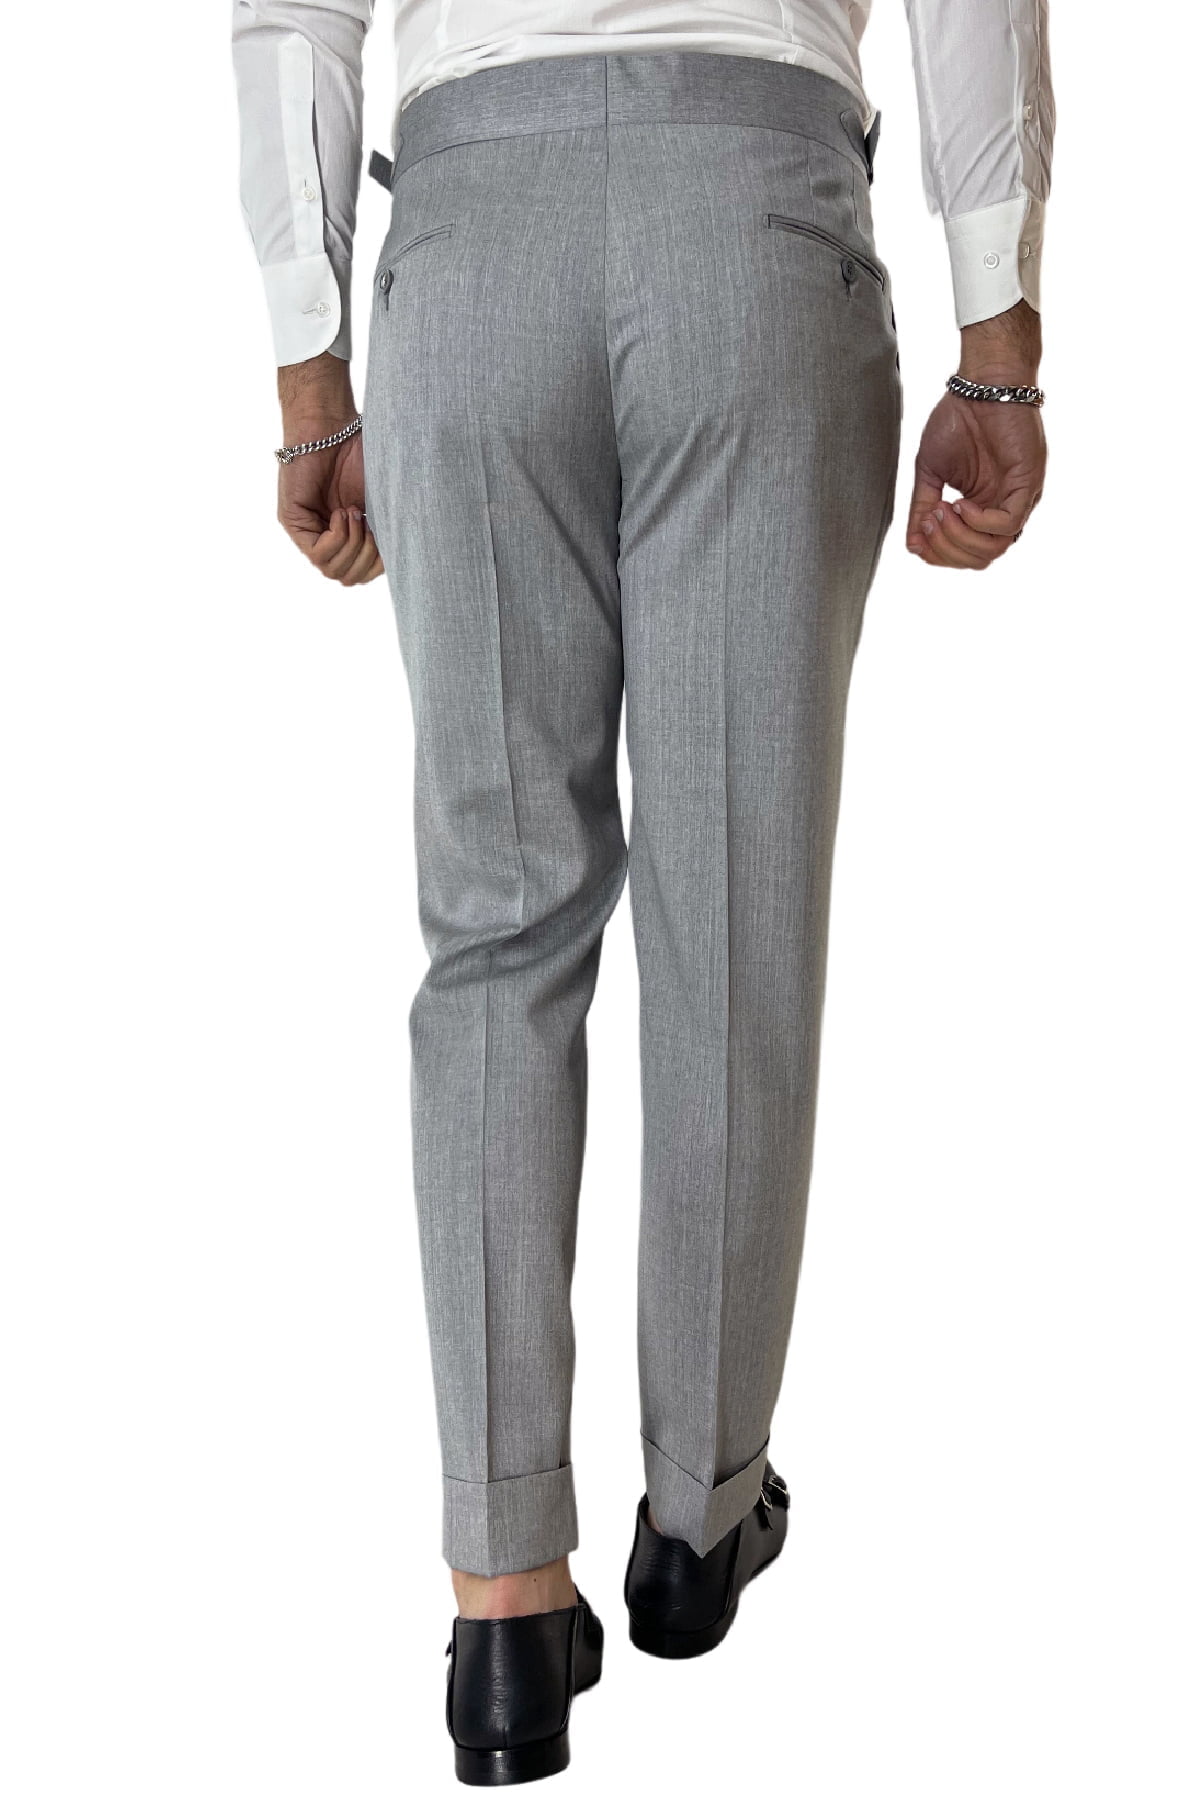 Abito uomo doppiopetto grigio chiaro in fresco lana 100% Vitale Barberis con pantalone vita alta